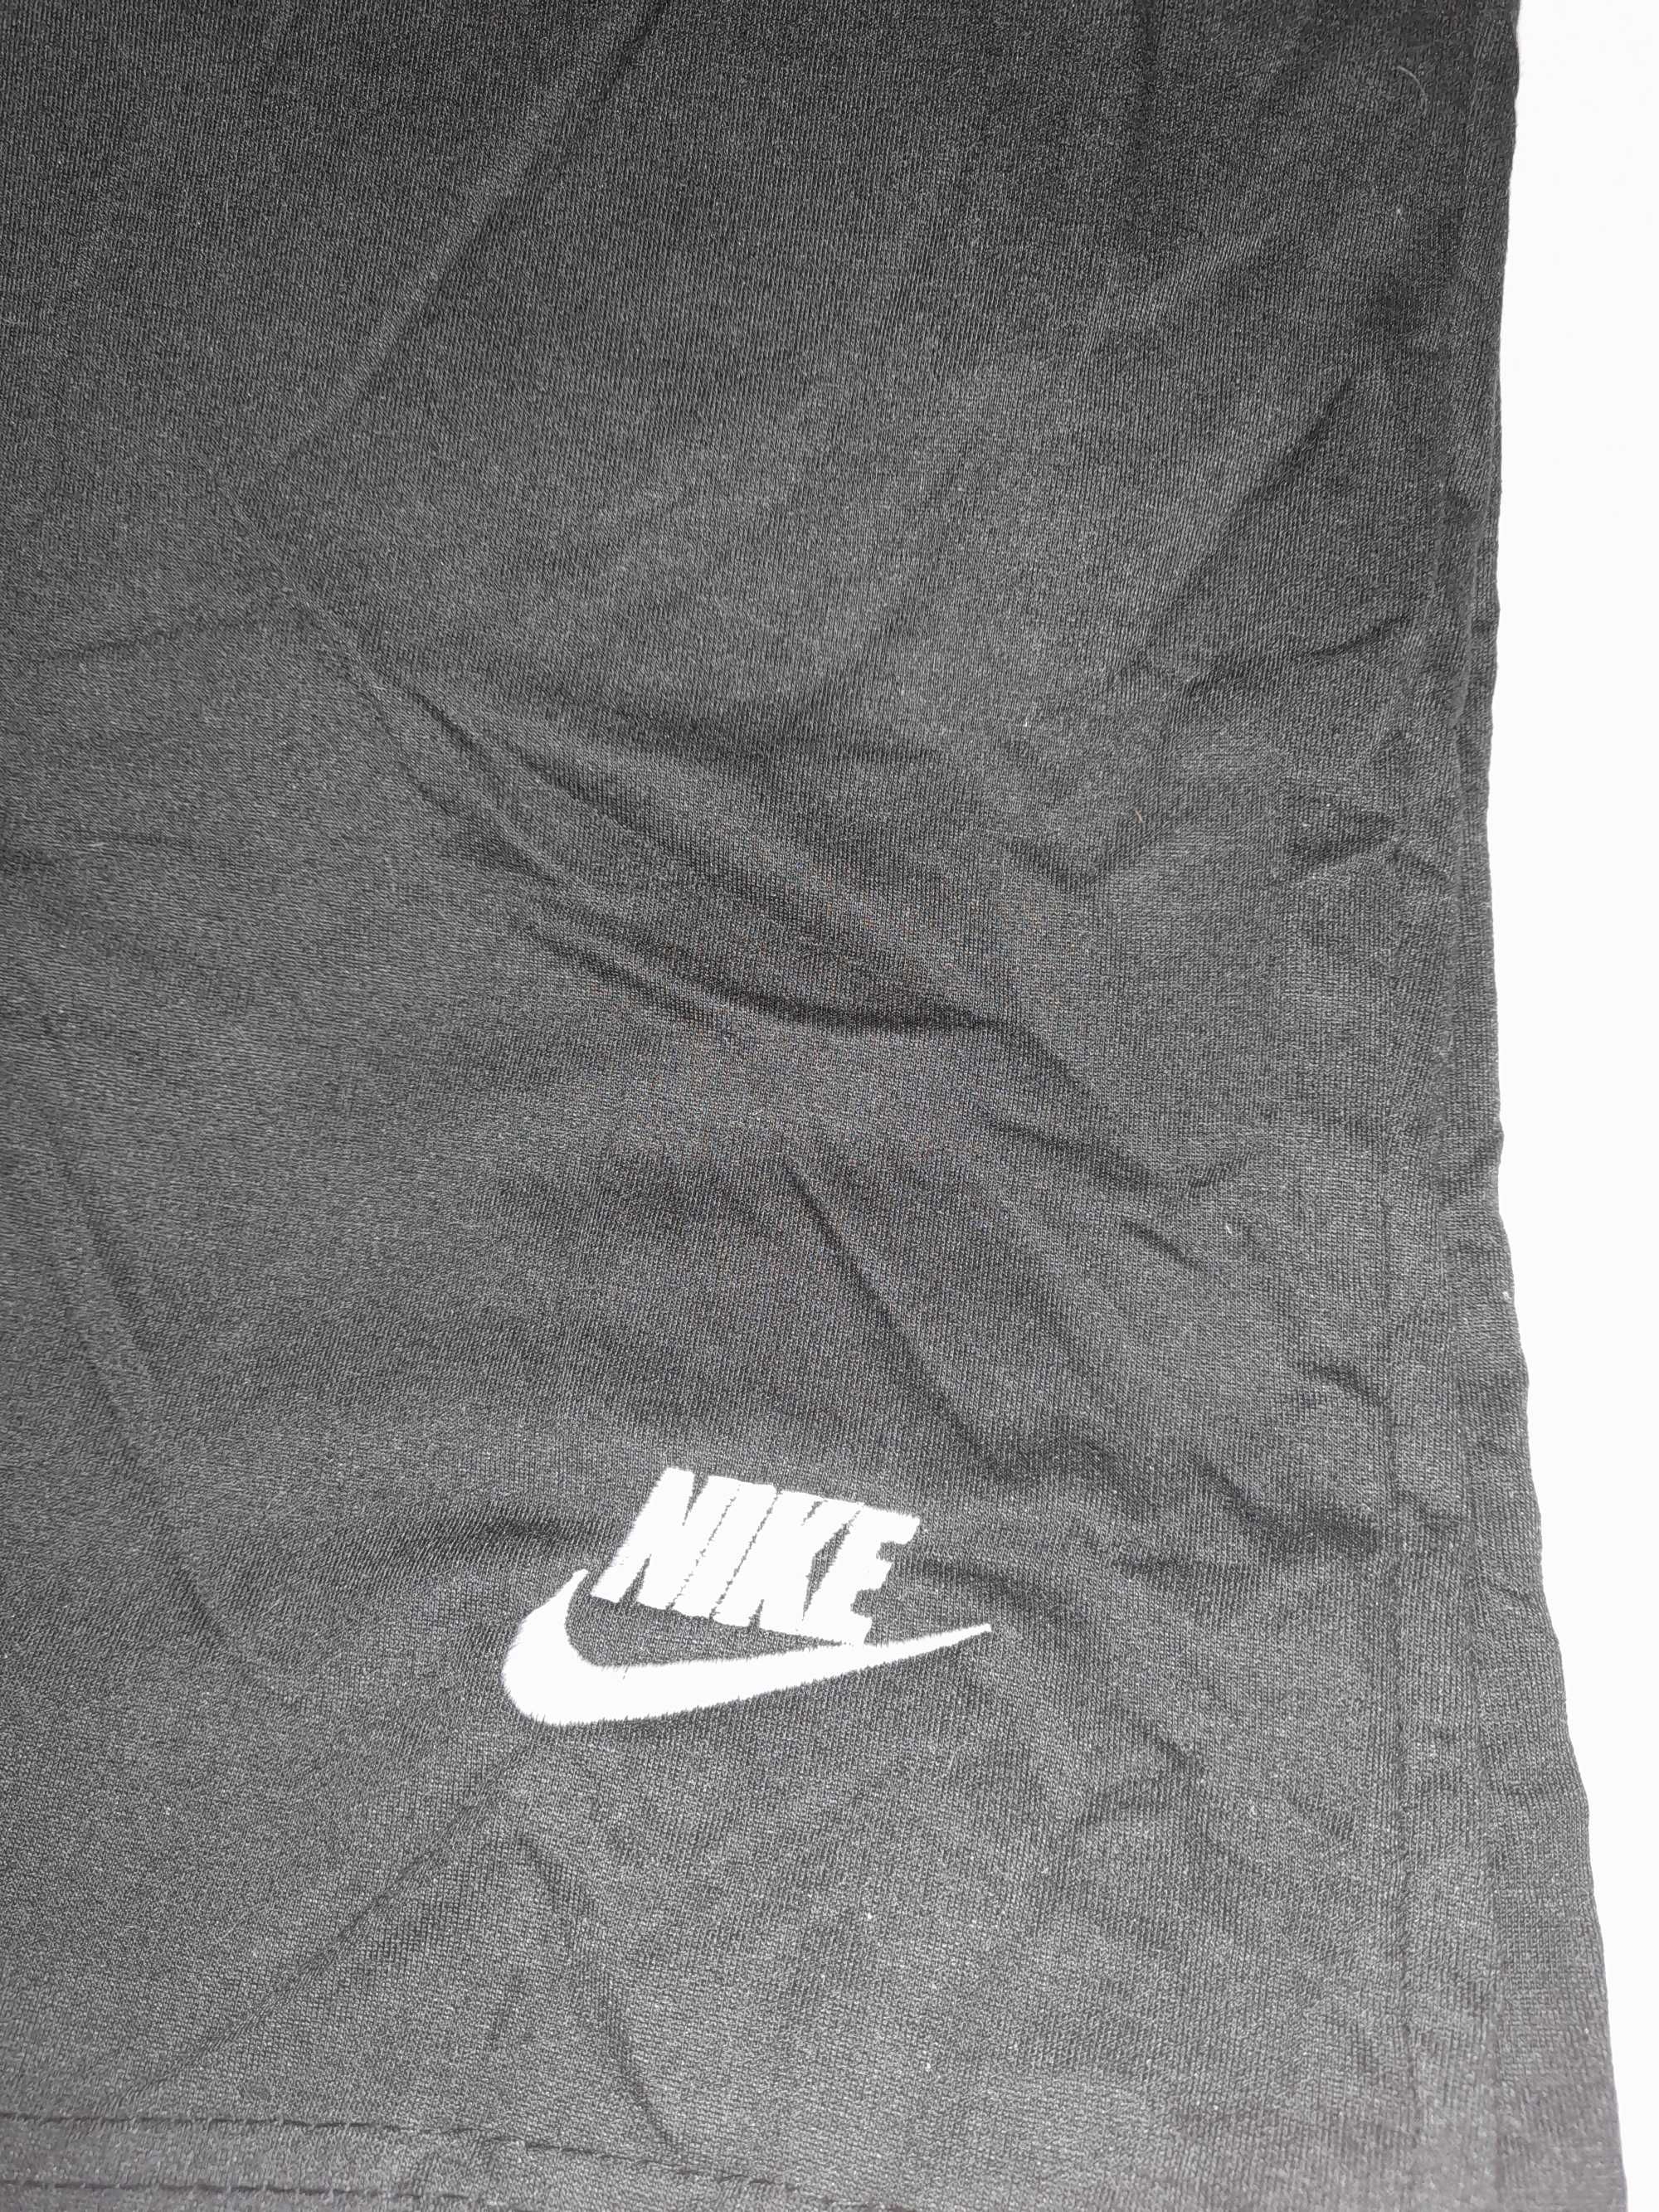 Nike spodenki męskie rozm. 2xl kolor czarny bawełna nowy